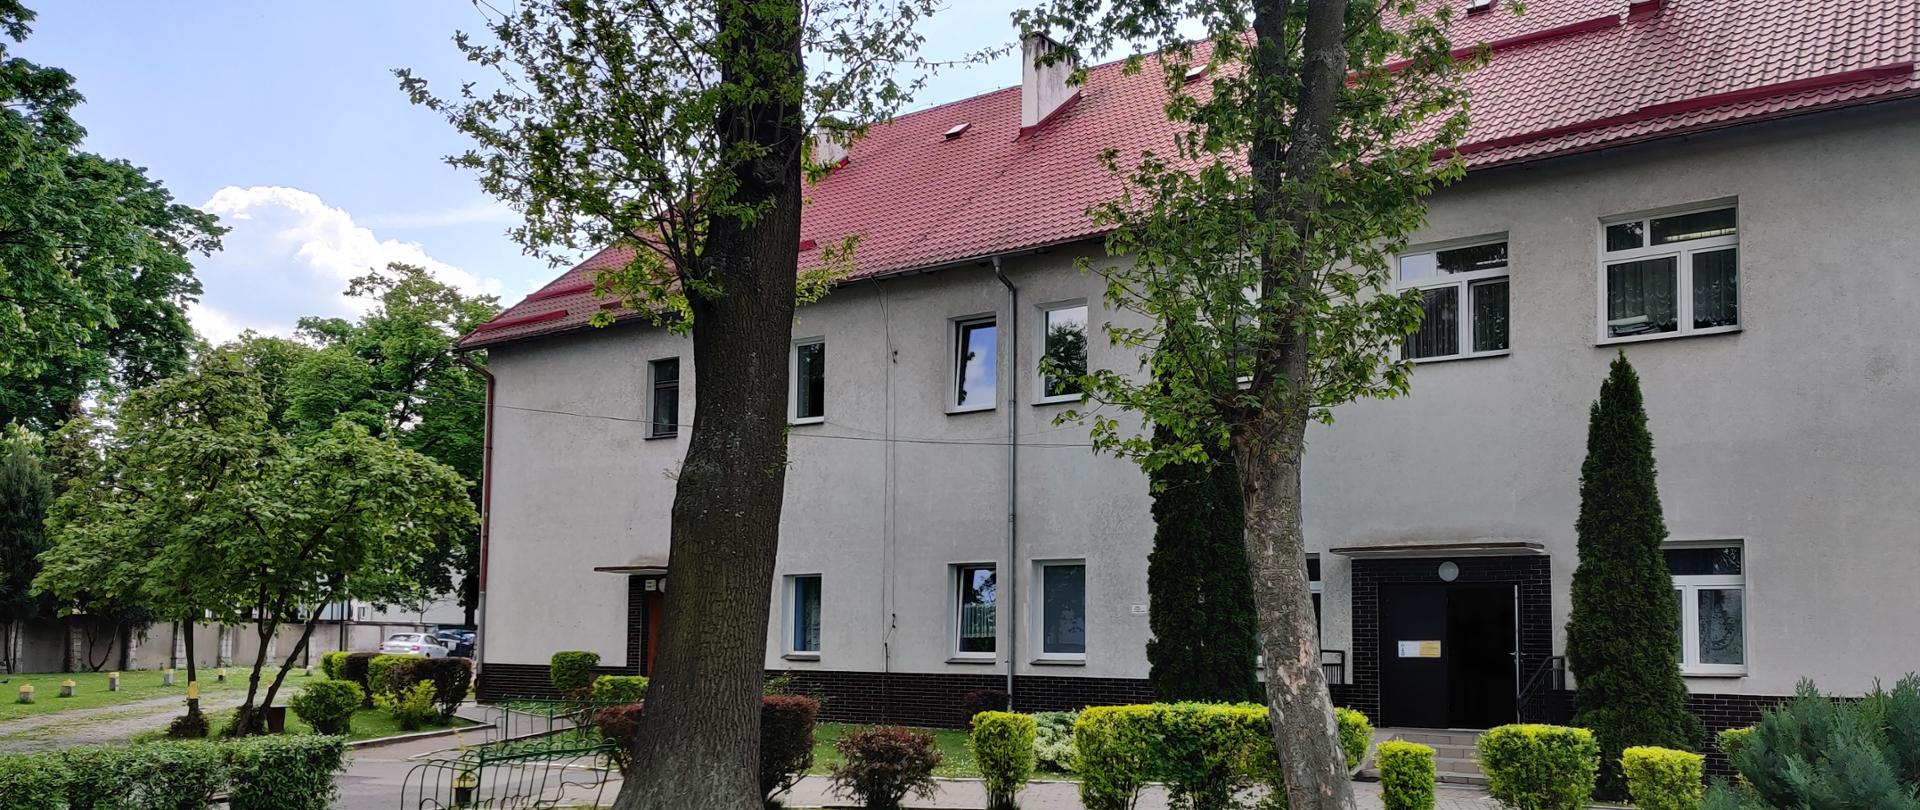 Zdjęcie przedstawiające "nowy" budynek szkoły przy ulicy Grunwaldzkiej 9 w Bolesławcu z przylegającym terenem zielonym.